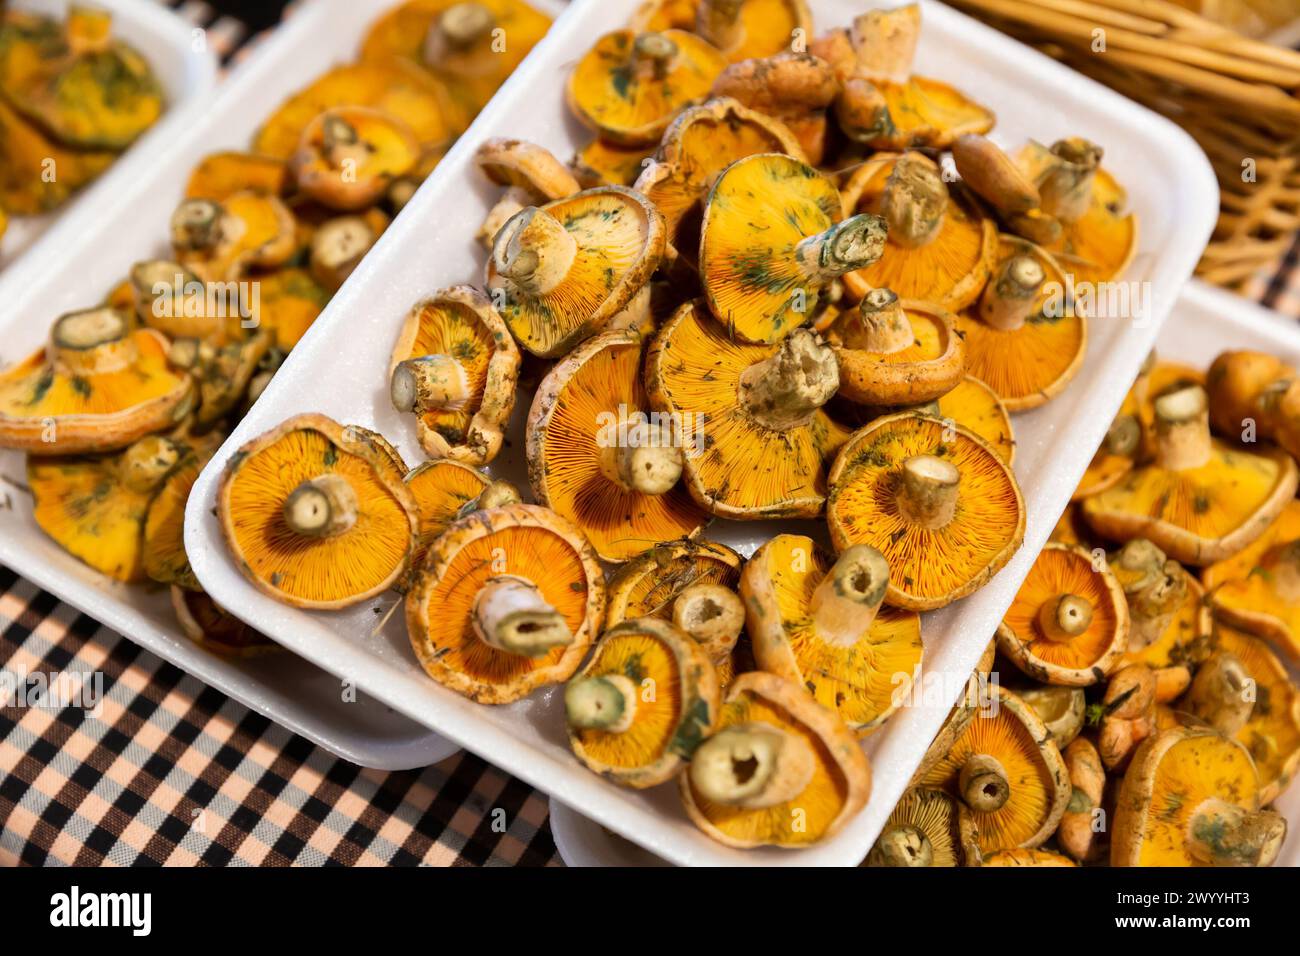 Fresh mushrooms lactarius deliciosus Stock Photo